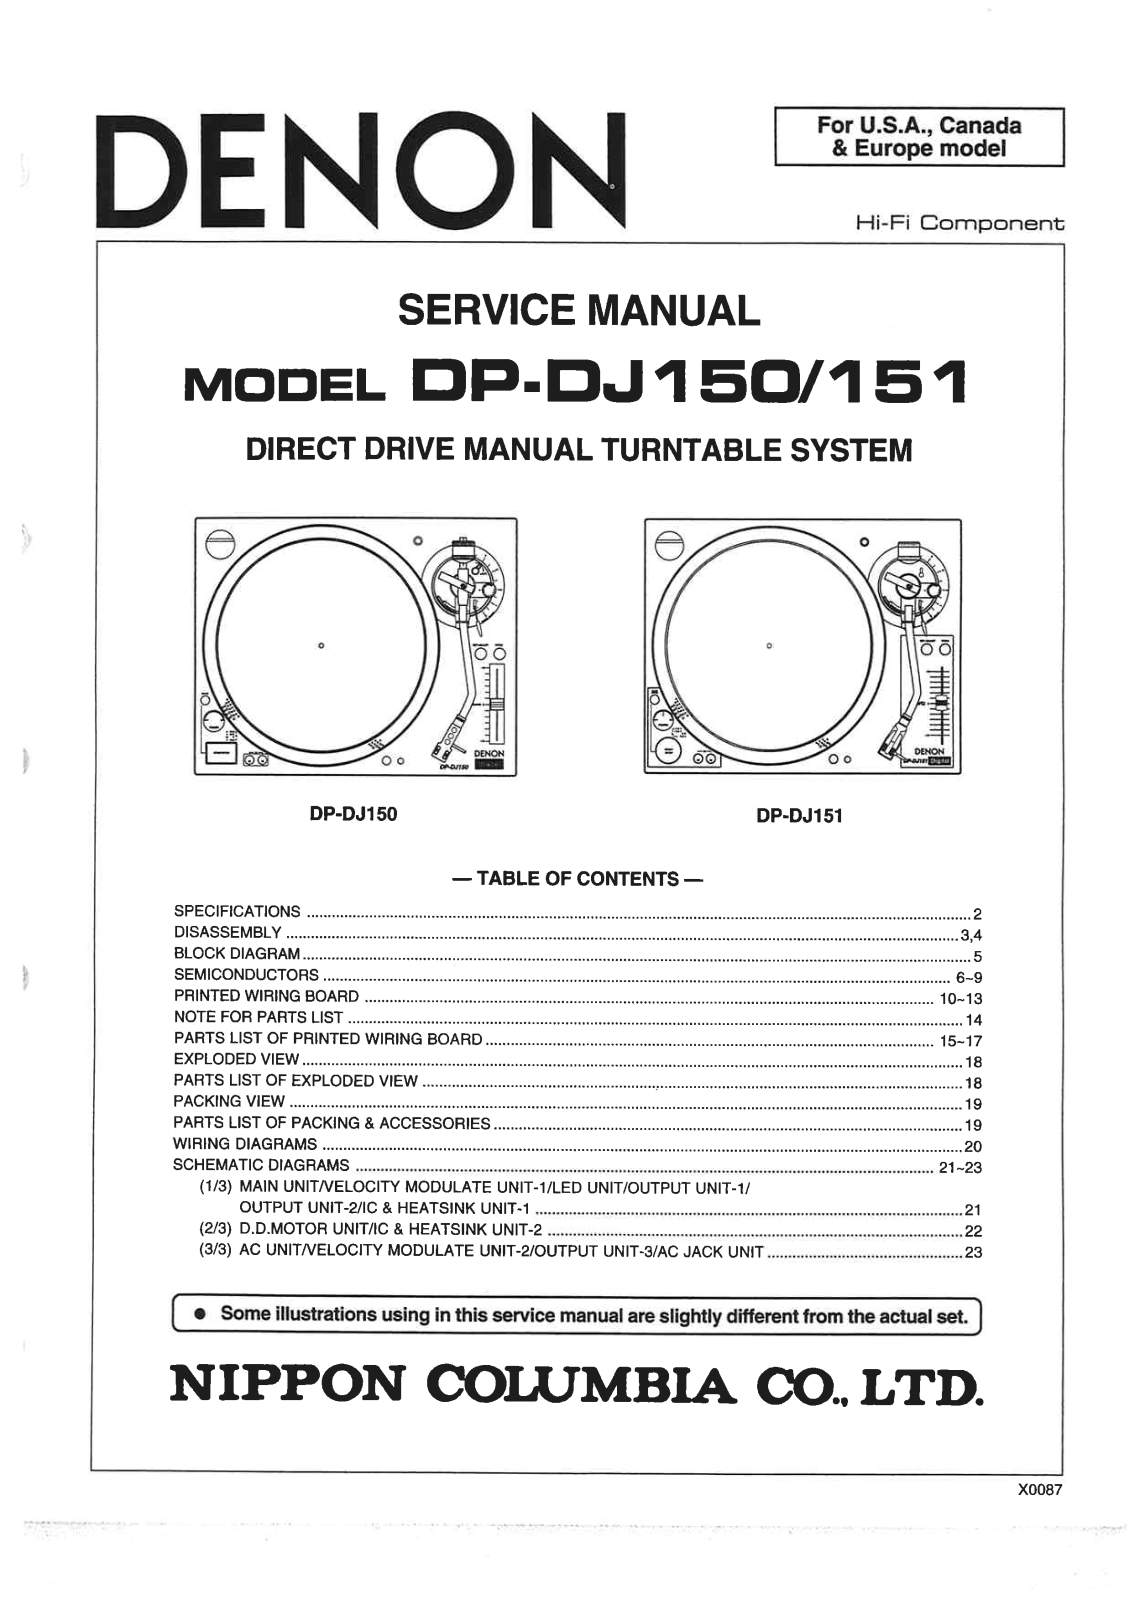 Denon DP-DJ150, DP-DJ151 Service Manual